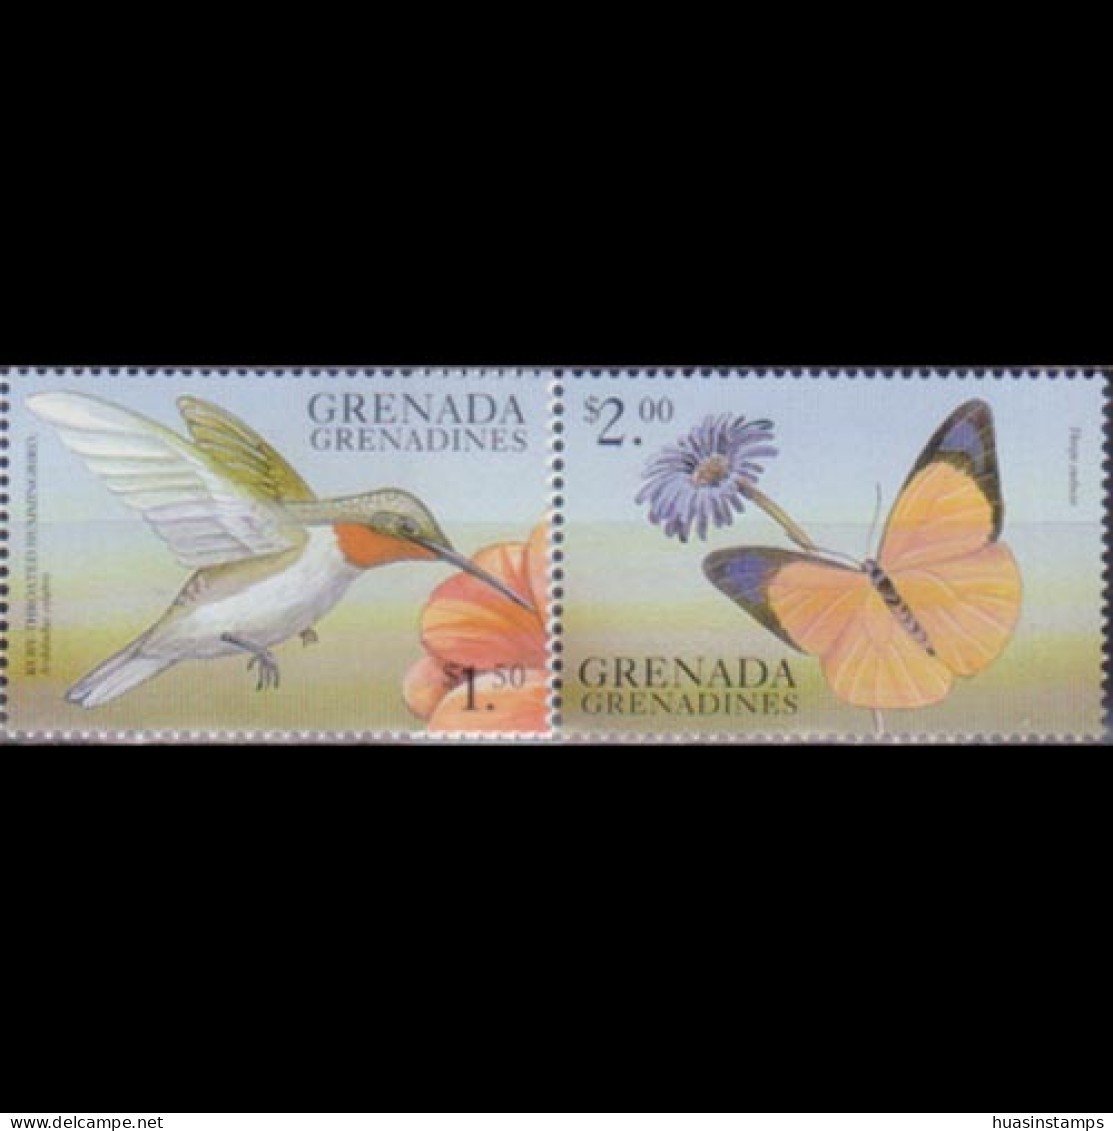 GRENADA GRENADINES 1999 - #2096-7 Bird/Butterfly $1.5-2 MNH - Grenada (1974-...)